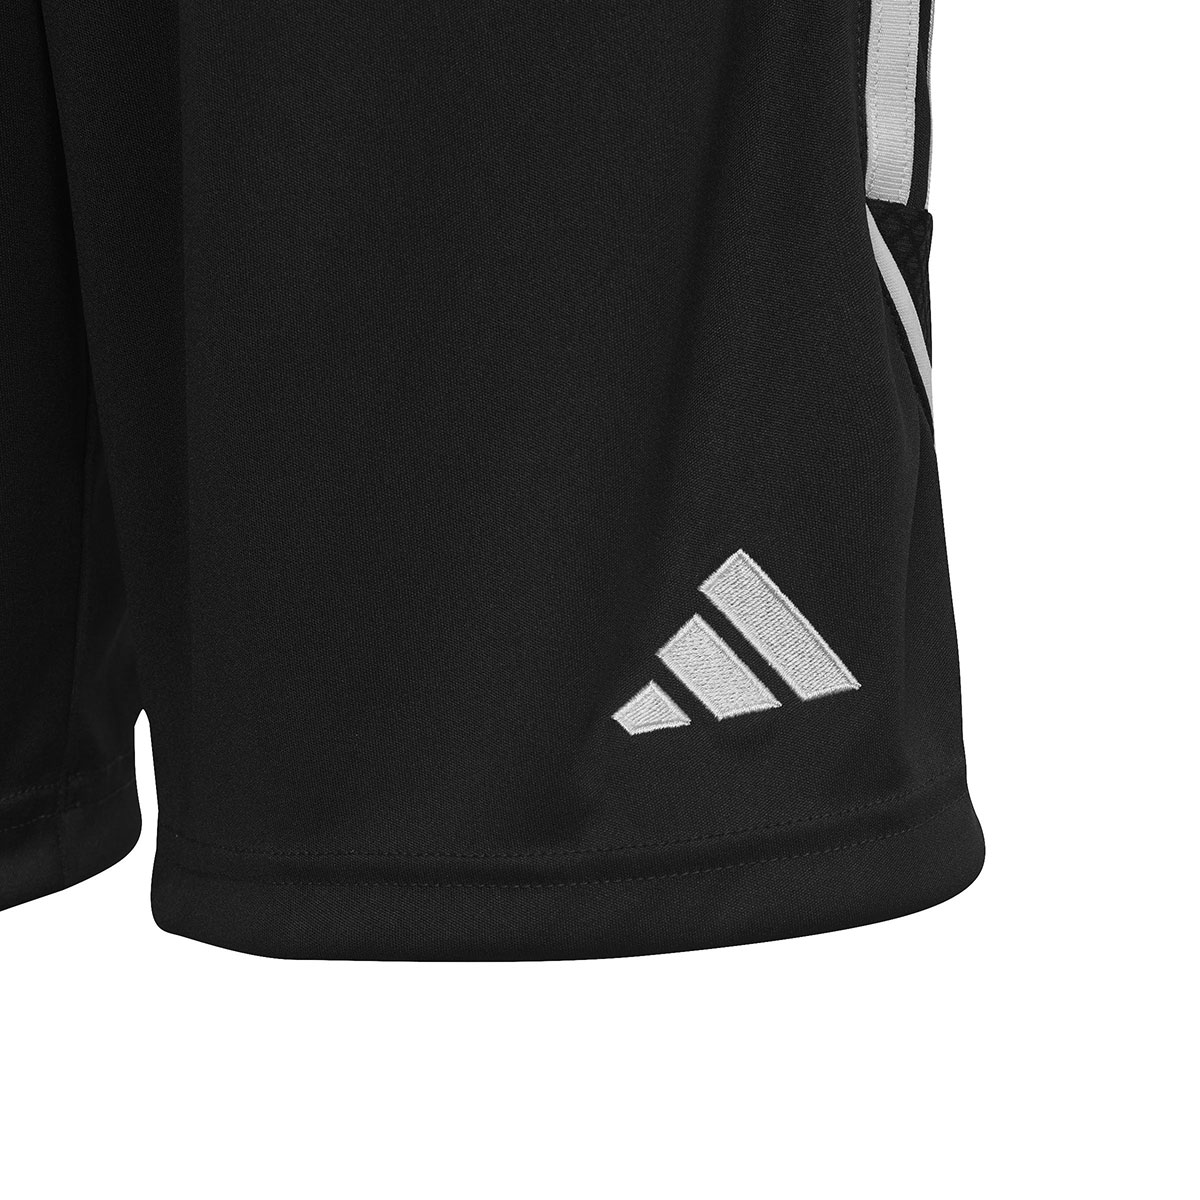 Adidas Kinder Shorts Tiro 23 schwarz-weiß